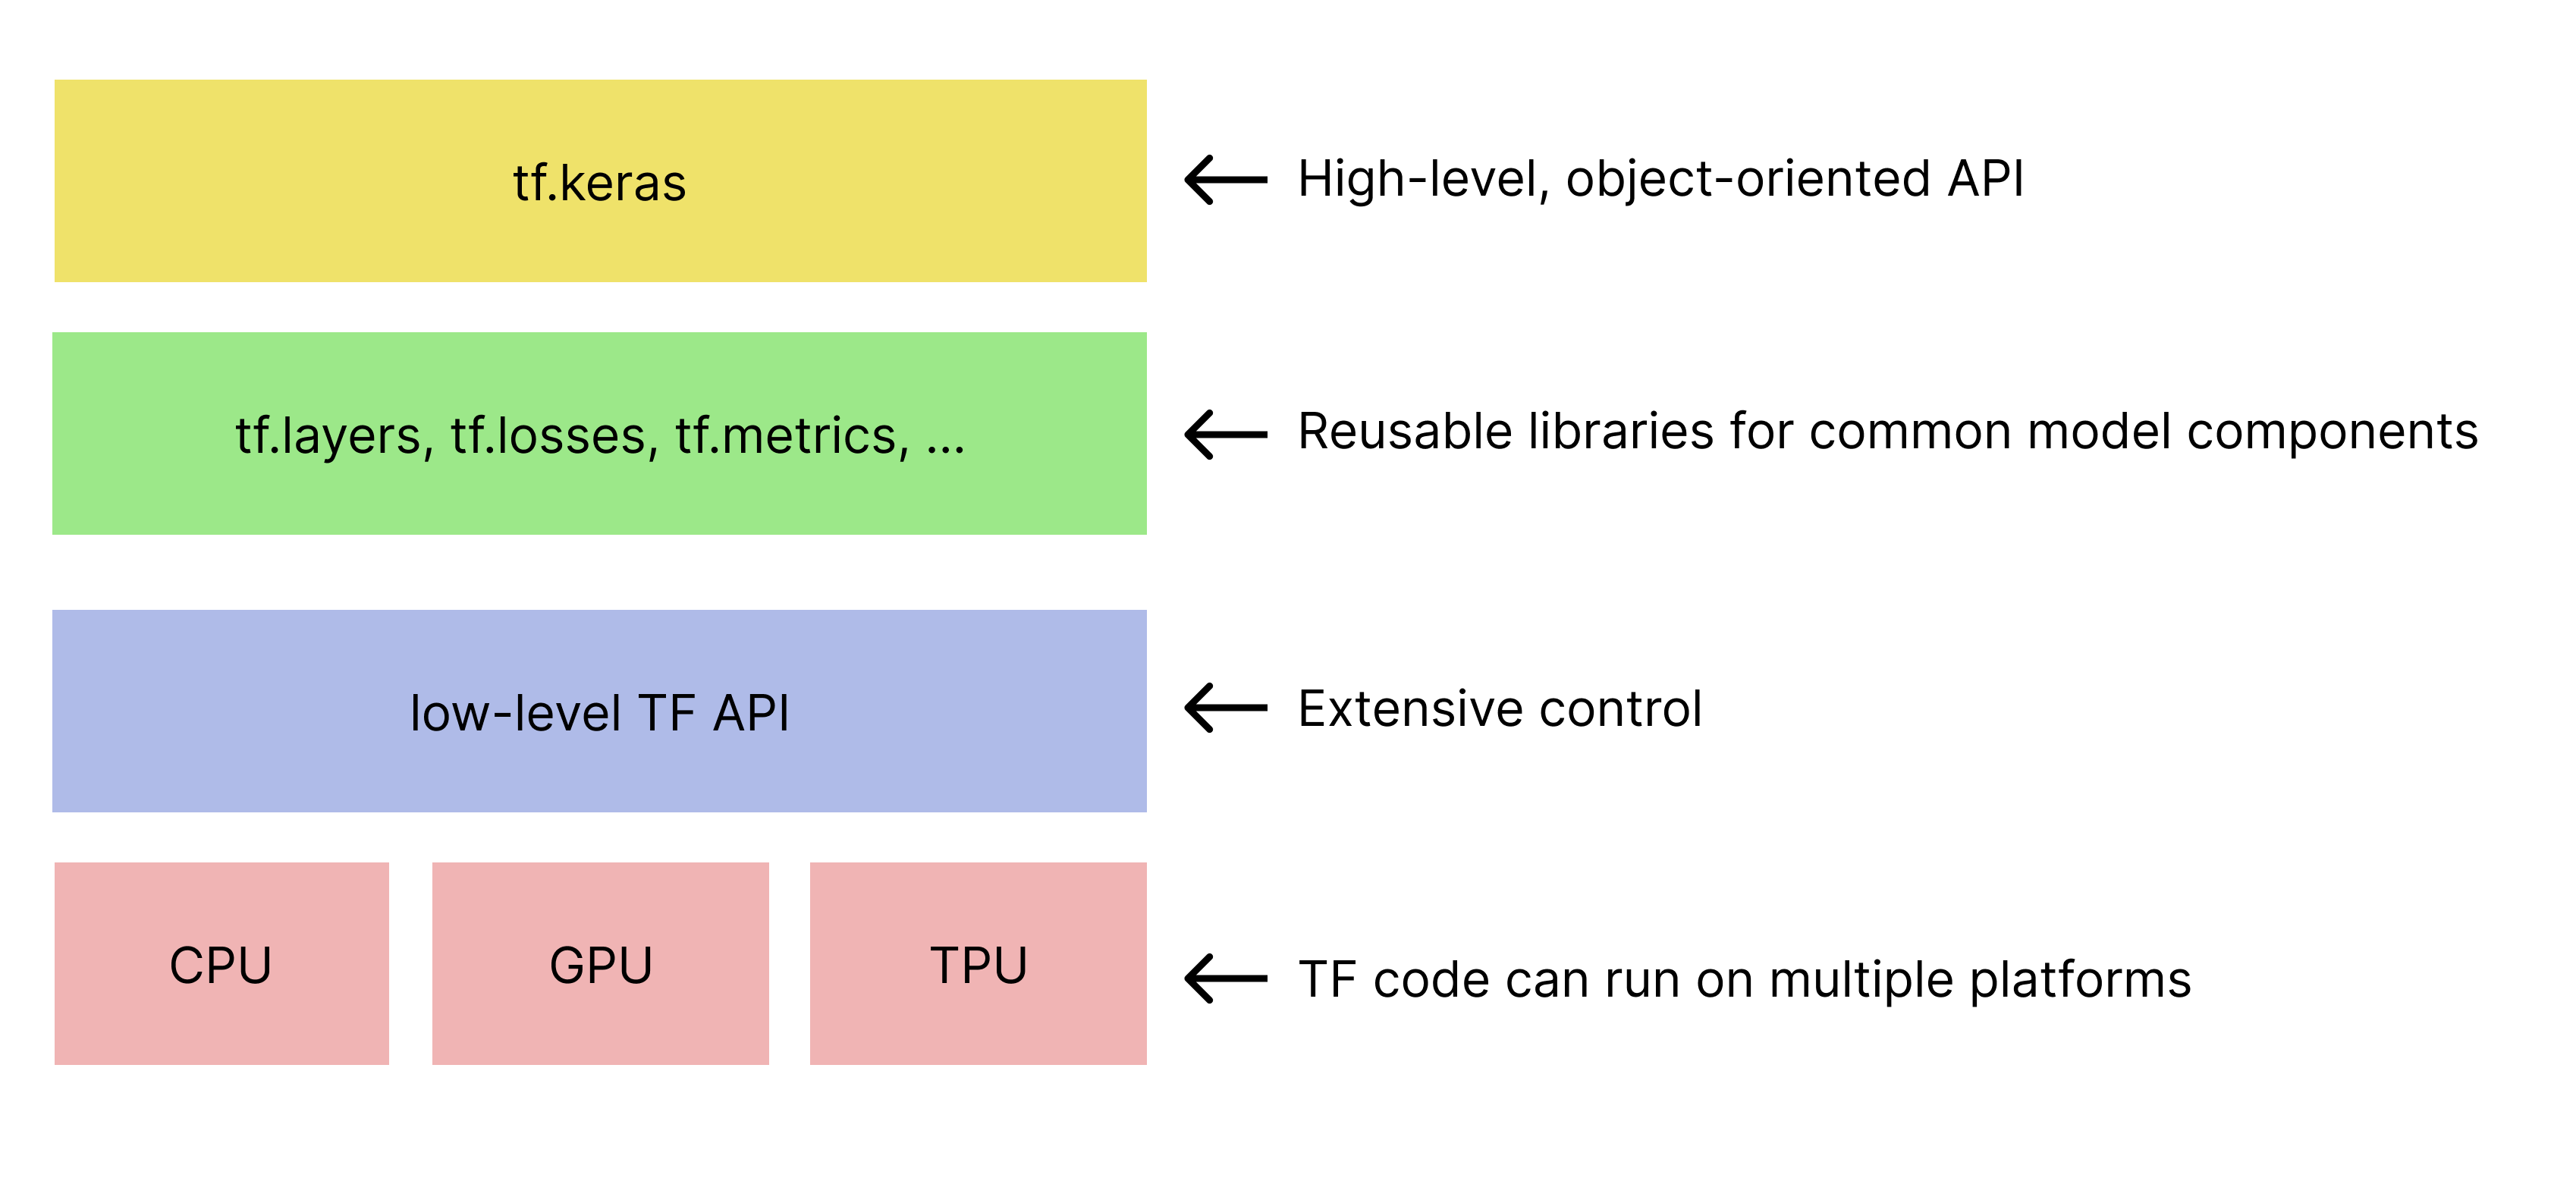 Vereinfachte Hierarchie von TensorFlow-Toolkits. 
   tf.keras API befindet sich oben.